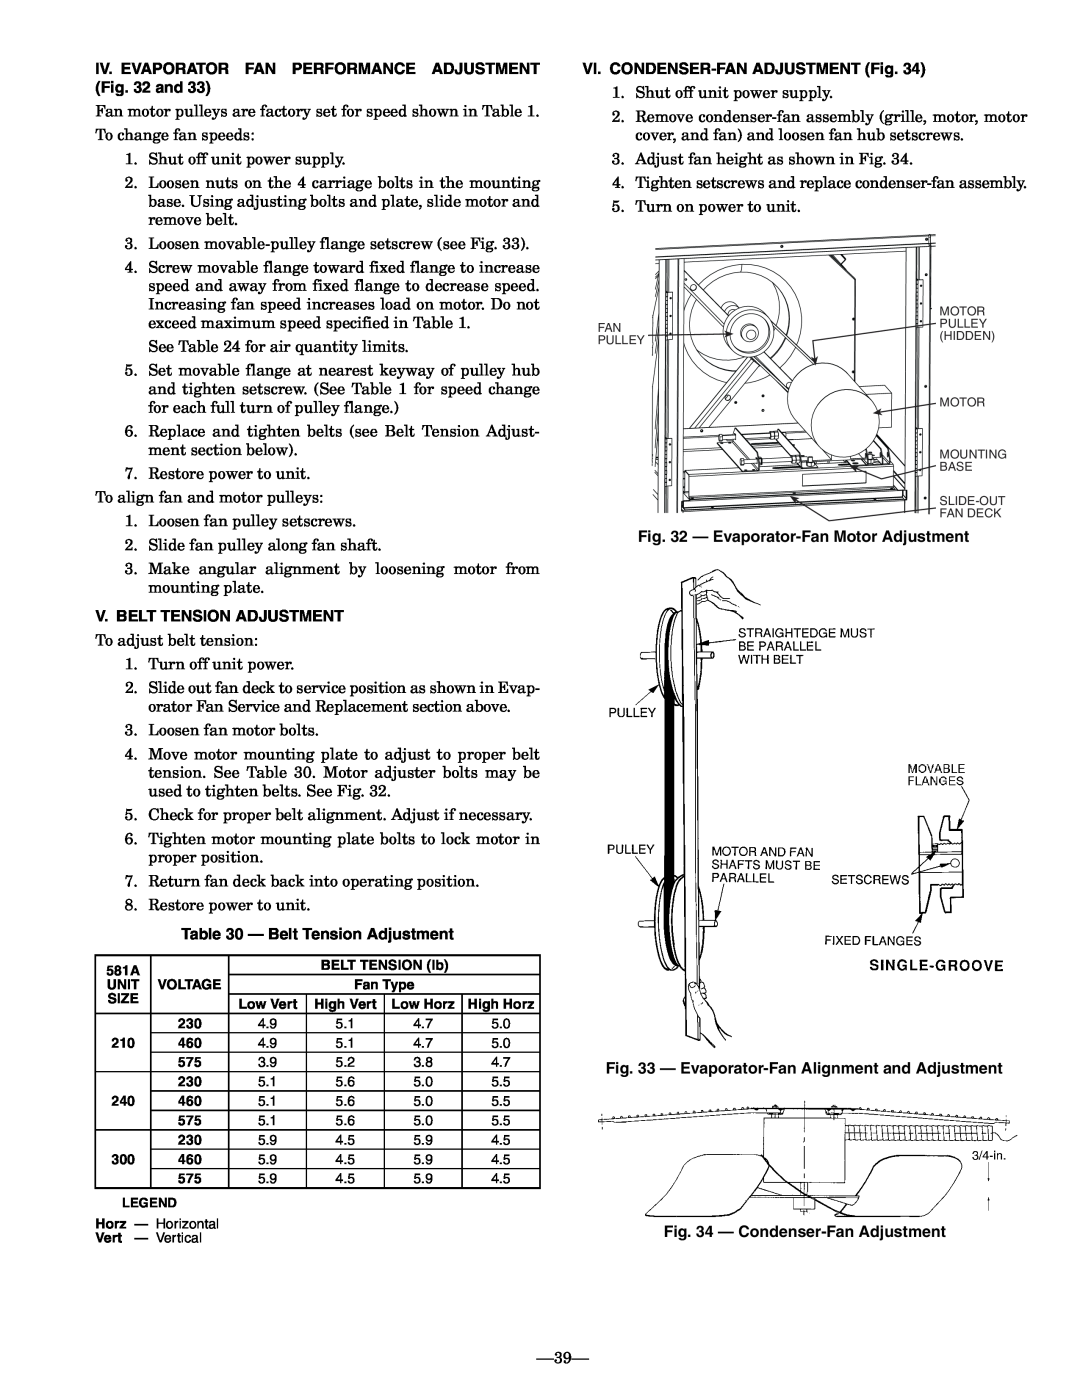 Bryant 581A operation manual V.Belt Tension Adjustment, VI. CONDENSER-FANADJUSTMENT Fig, Evaporator-FanMotor Adjustment 